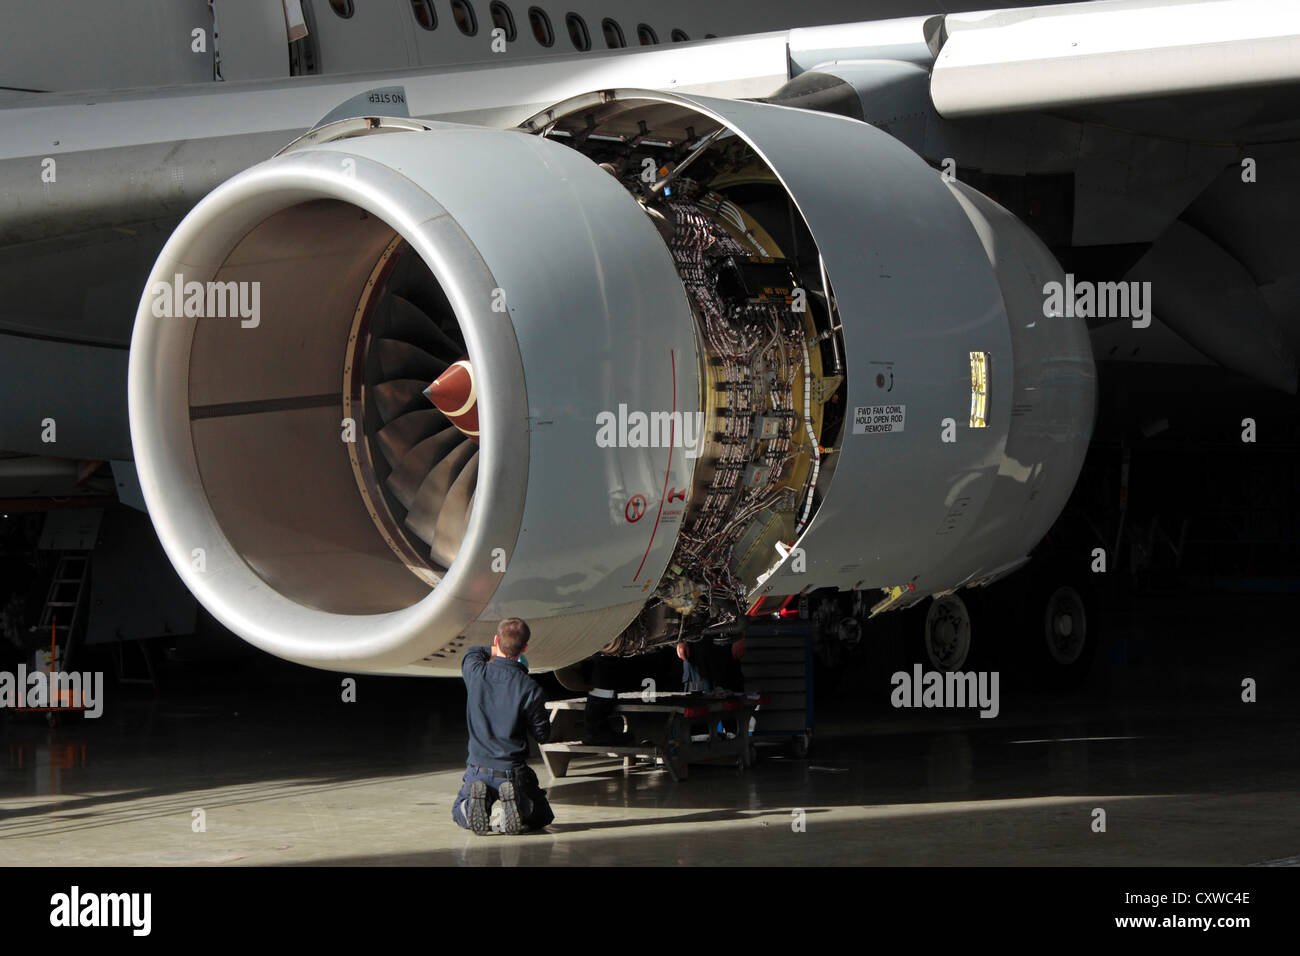 Il tecnico esegue la manutenzione su una Rolls Royce Trent 500 aeromobili jet. Ingegneria Aeronautica, knowledge worker, manodopera qualificata. Foto Stock